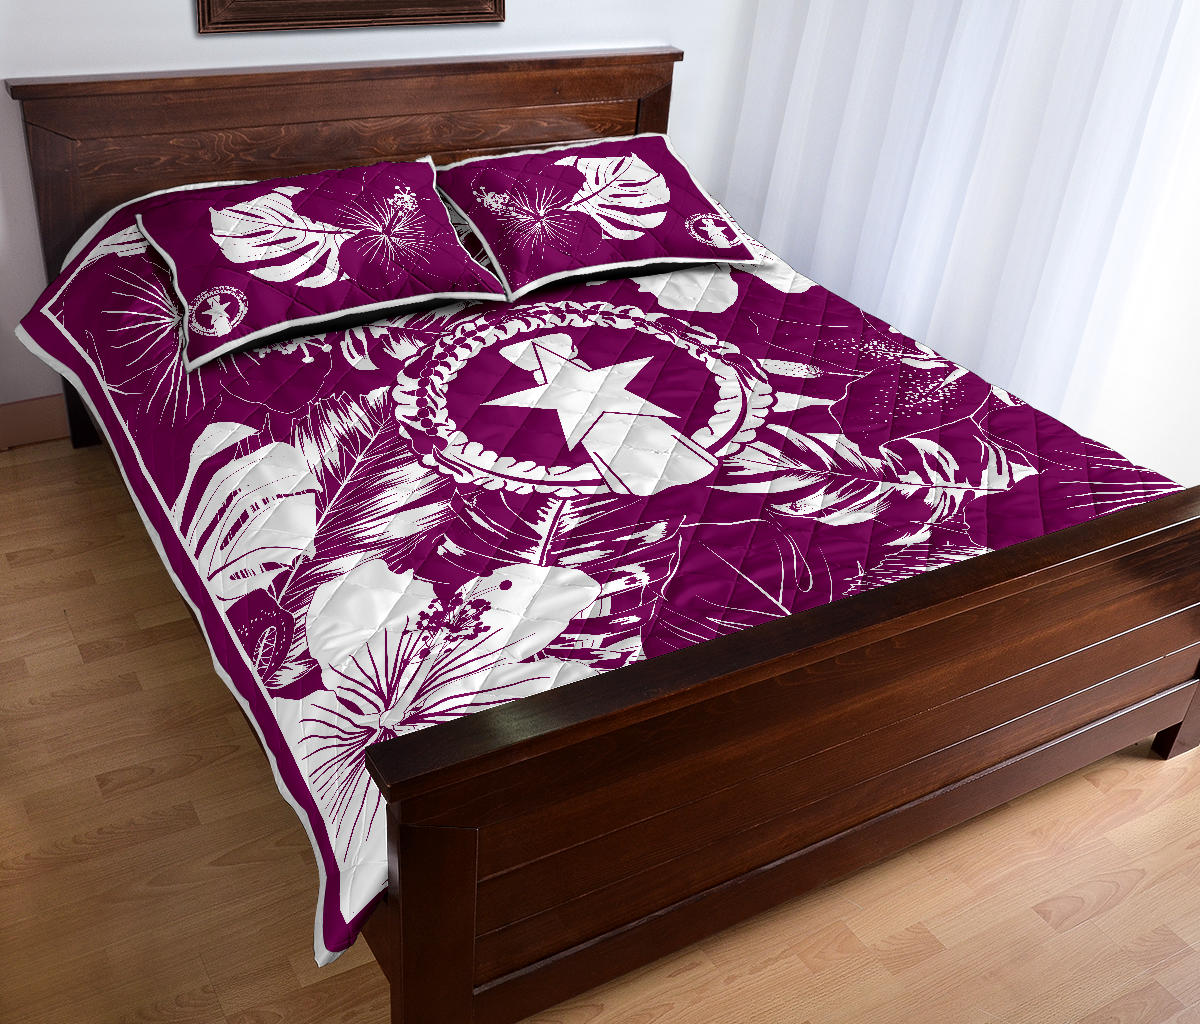 CNMI Saipan Tinian Rota Hibiscus Purple Quilt Bedding Set